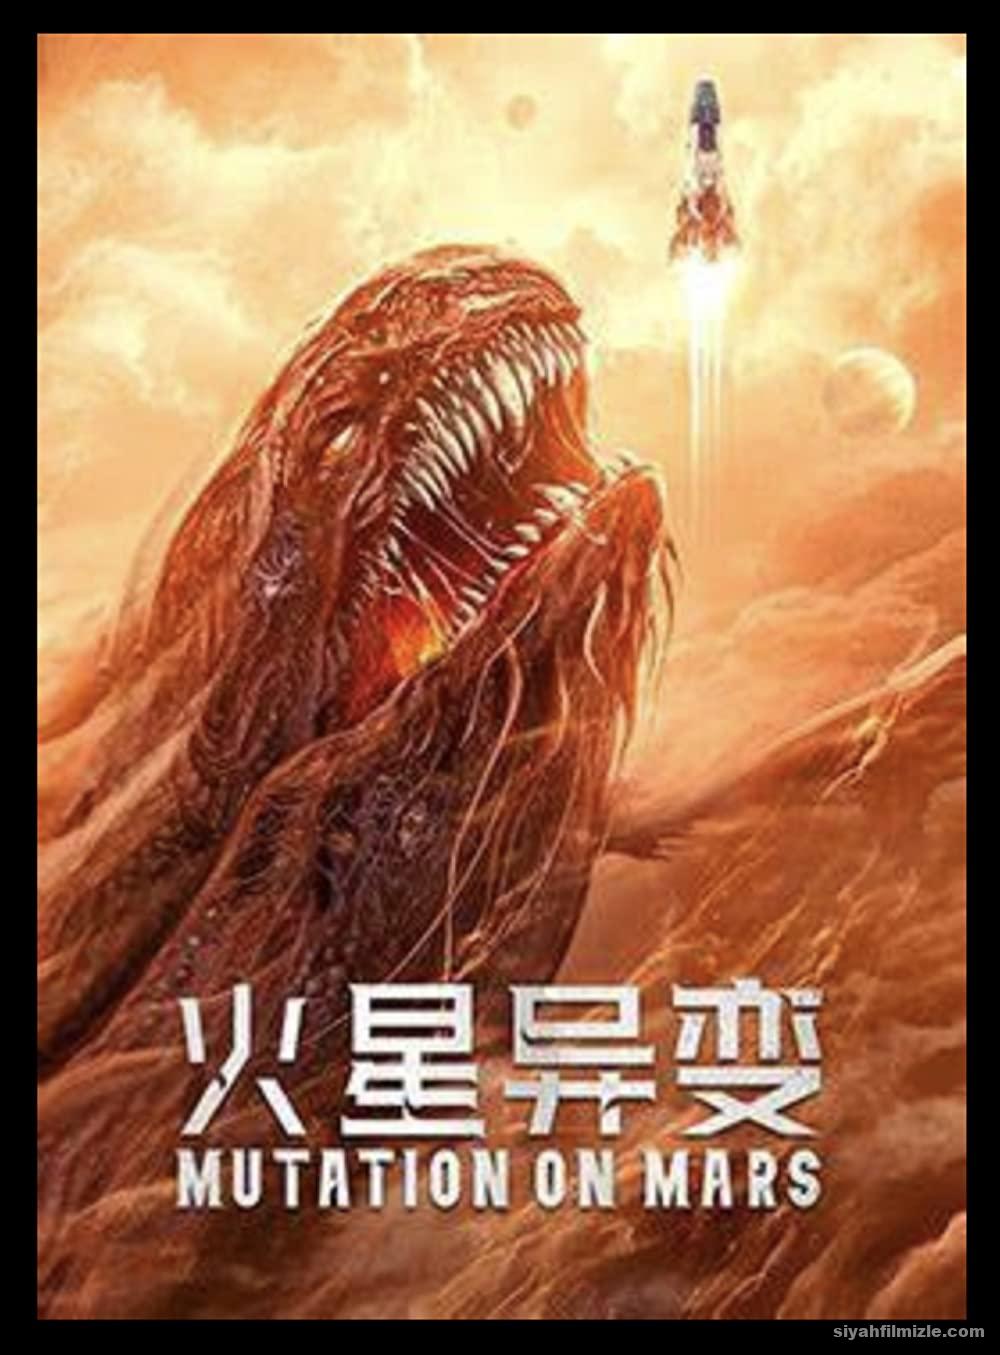 Mutation on Mars 2021 Filmi Türkçe Dublaj Altyazılı izle